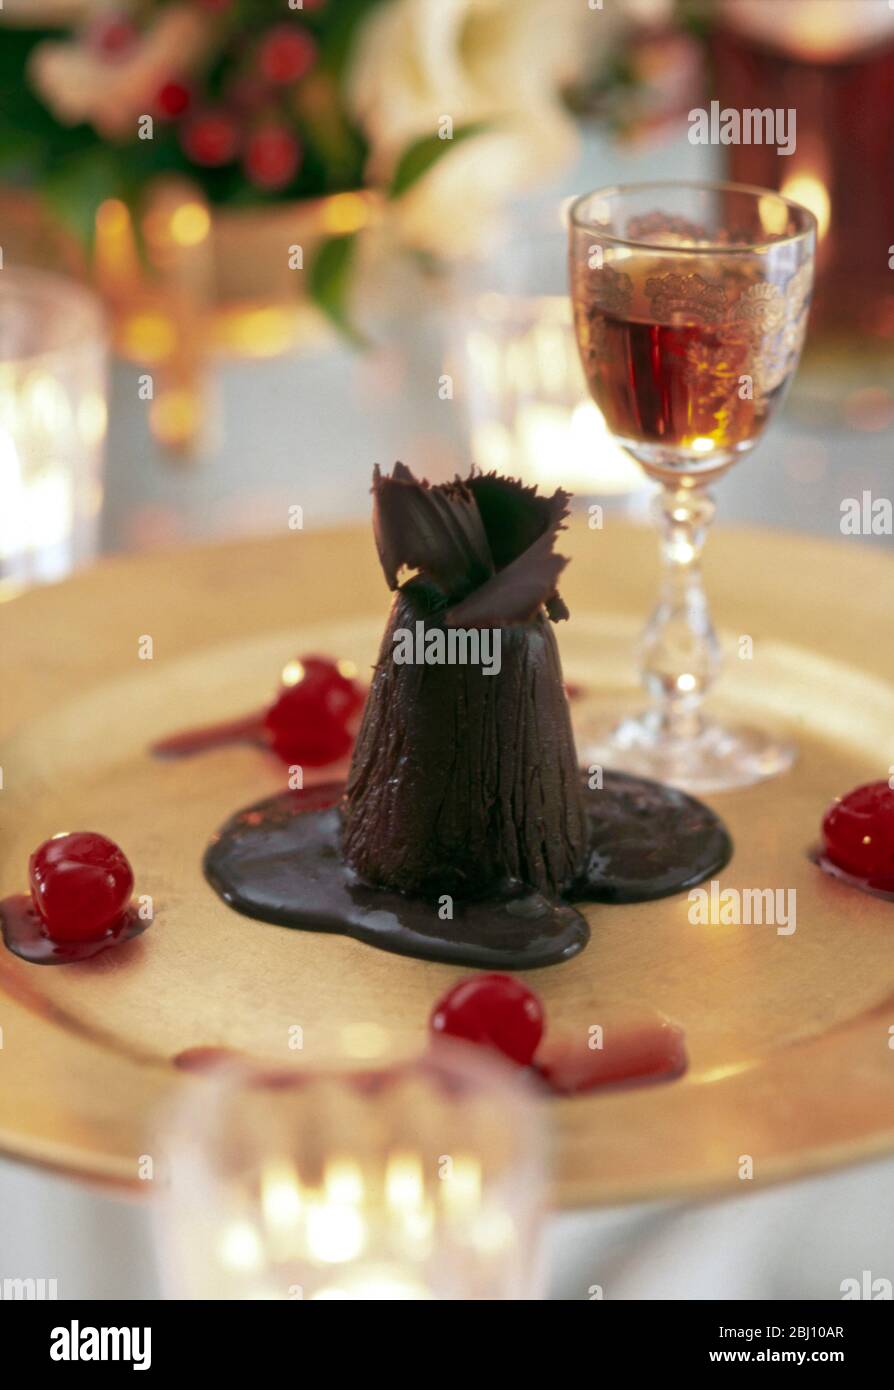 Schokoladeneis Parfait auf Goldplatte mit Kirschen und einem Glas Dessertwein auf festlichem weihnachtstisch - Stockfoto